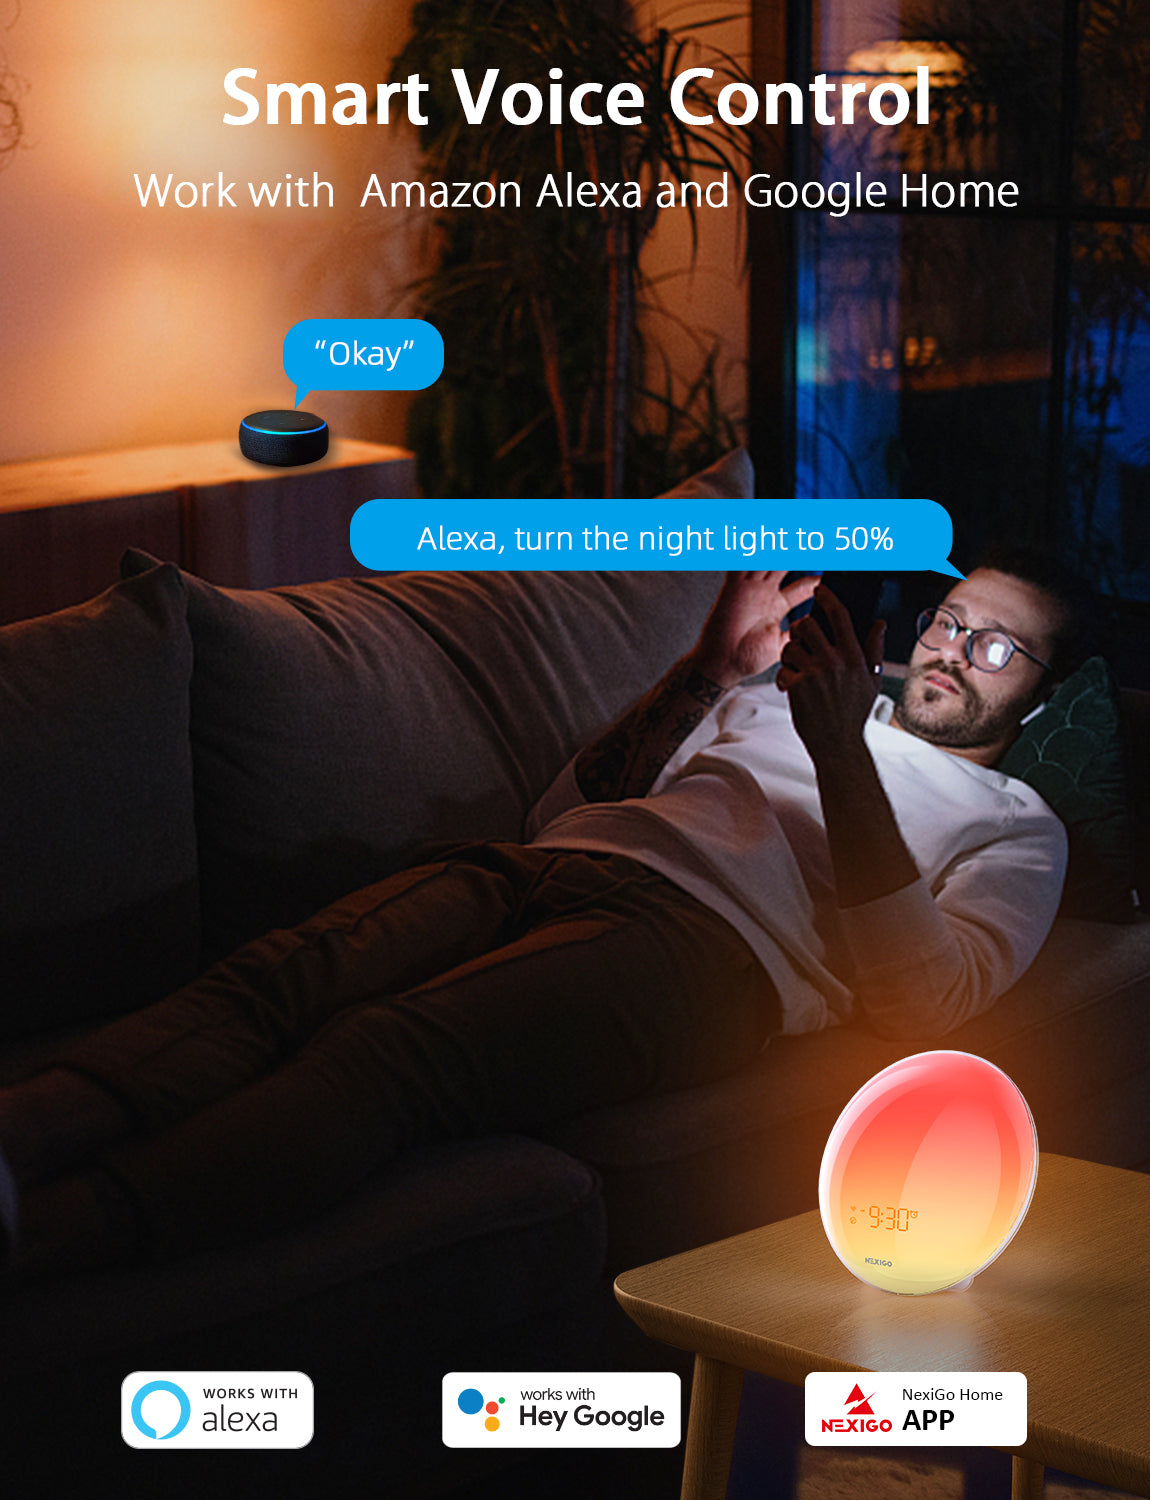 A man adjusts the alarm clock brightness using Alexa commands.